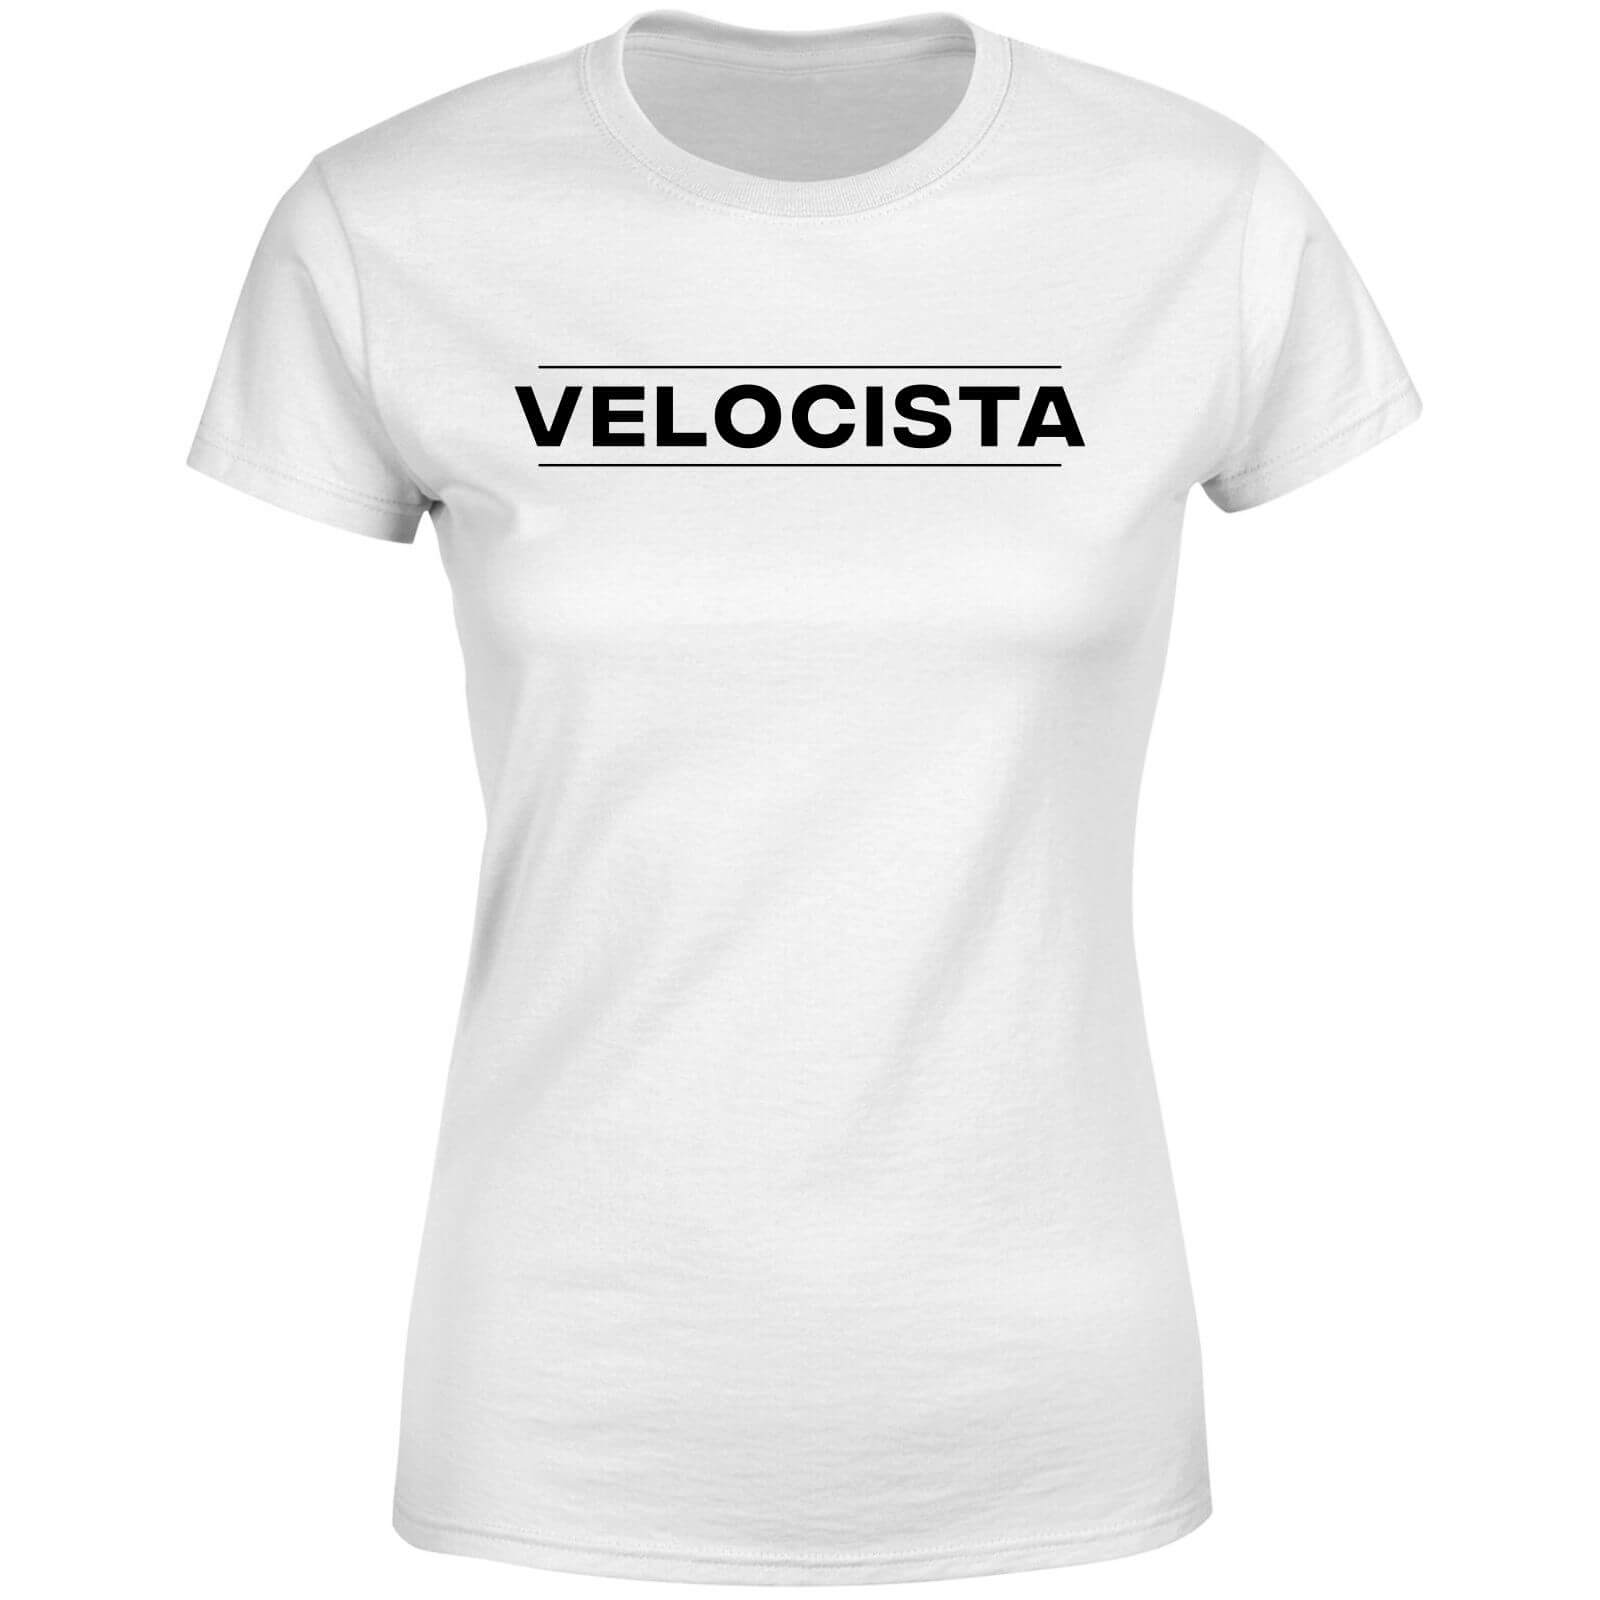 Velocista Women's T-Shirt - White - XXL - White